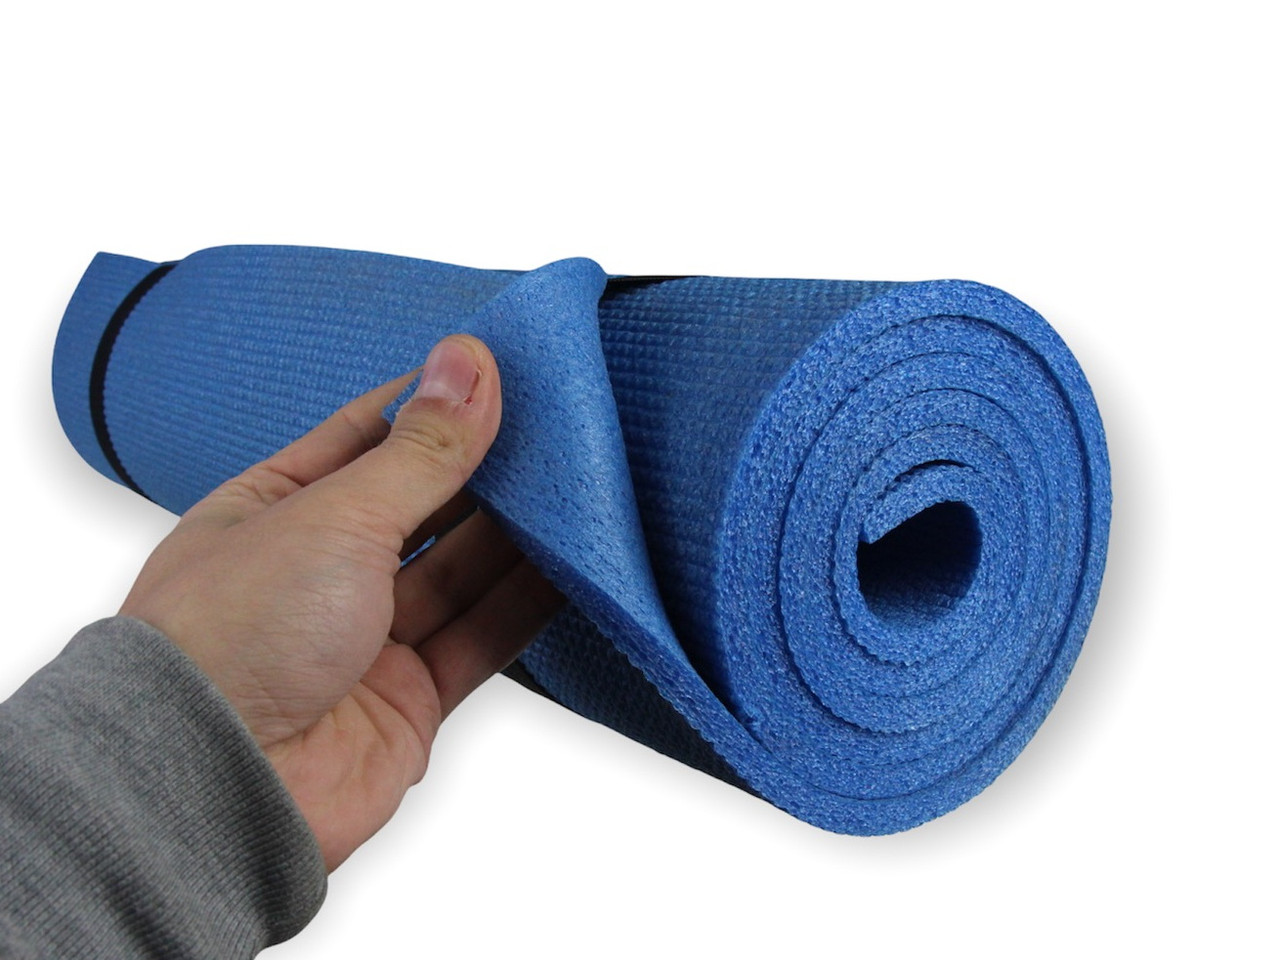 Килимок для фітнесу та йоги AEROBICA 8, синій, рулонний, товщина 8мм, ширина 120см детальна фотка